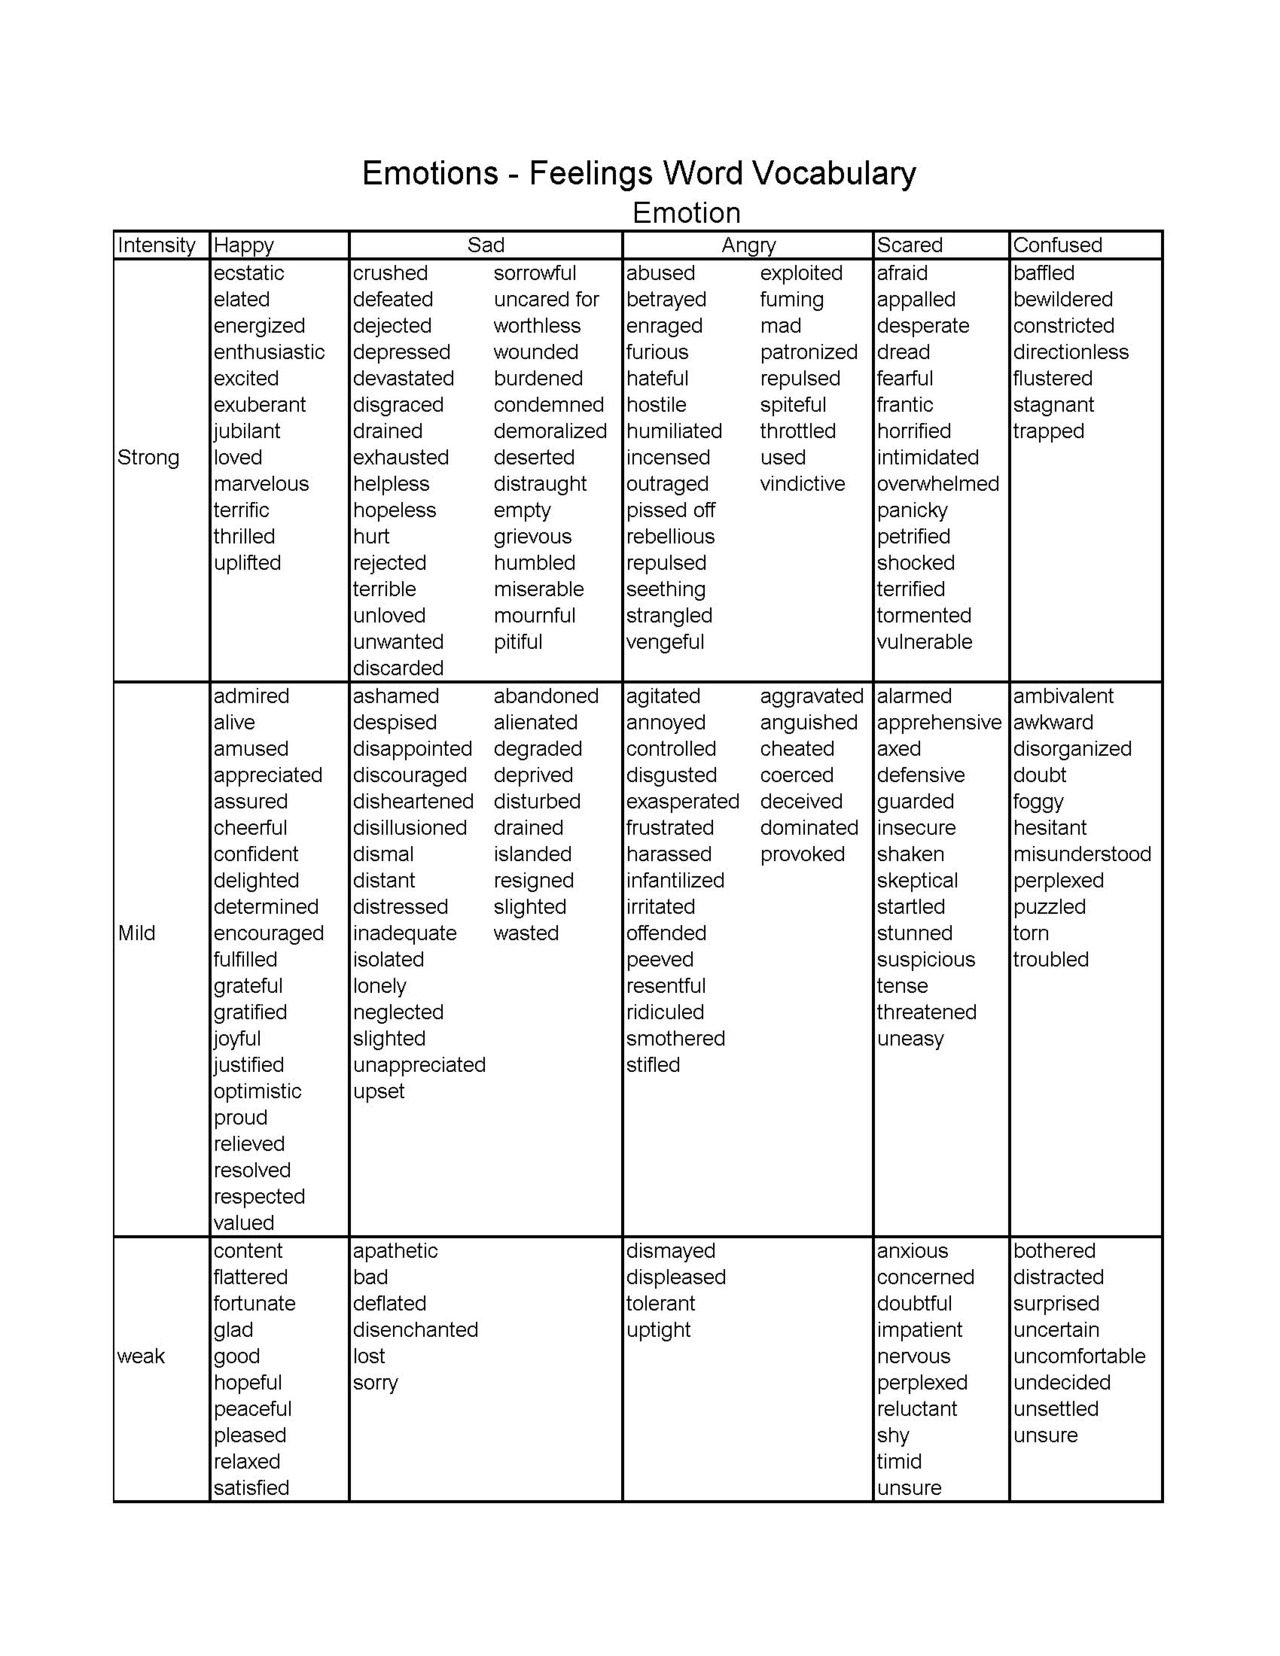 Listado de vocabulario relacionado con emociones/sentimientos 